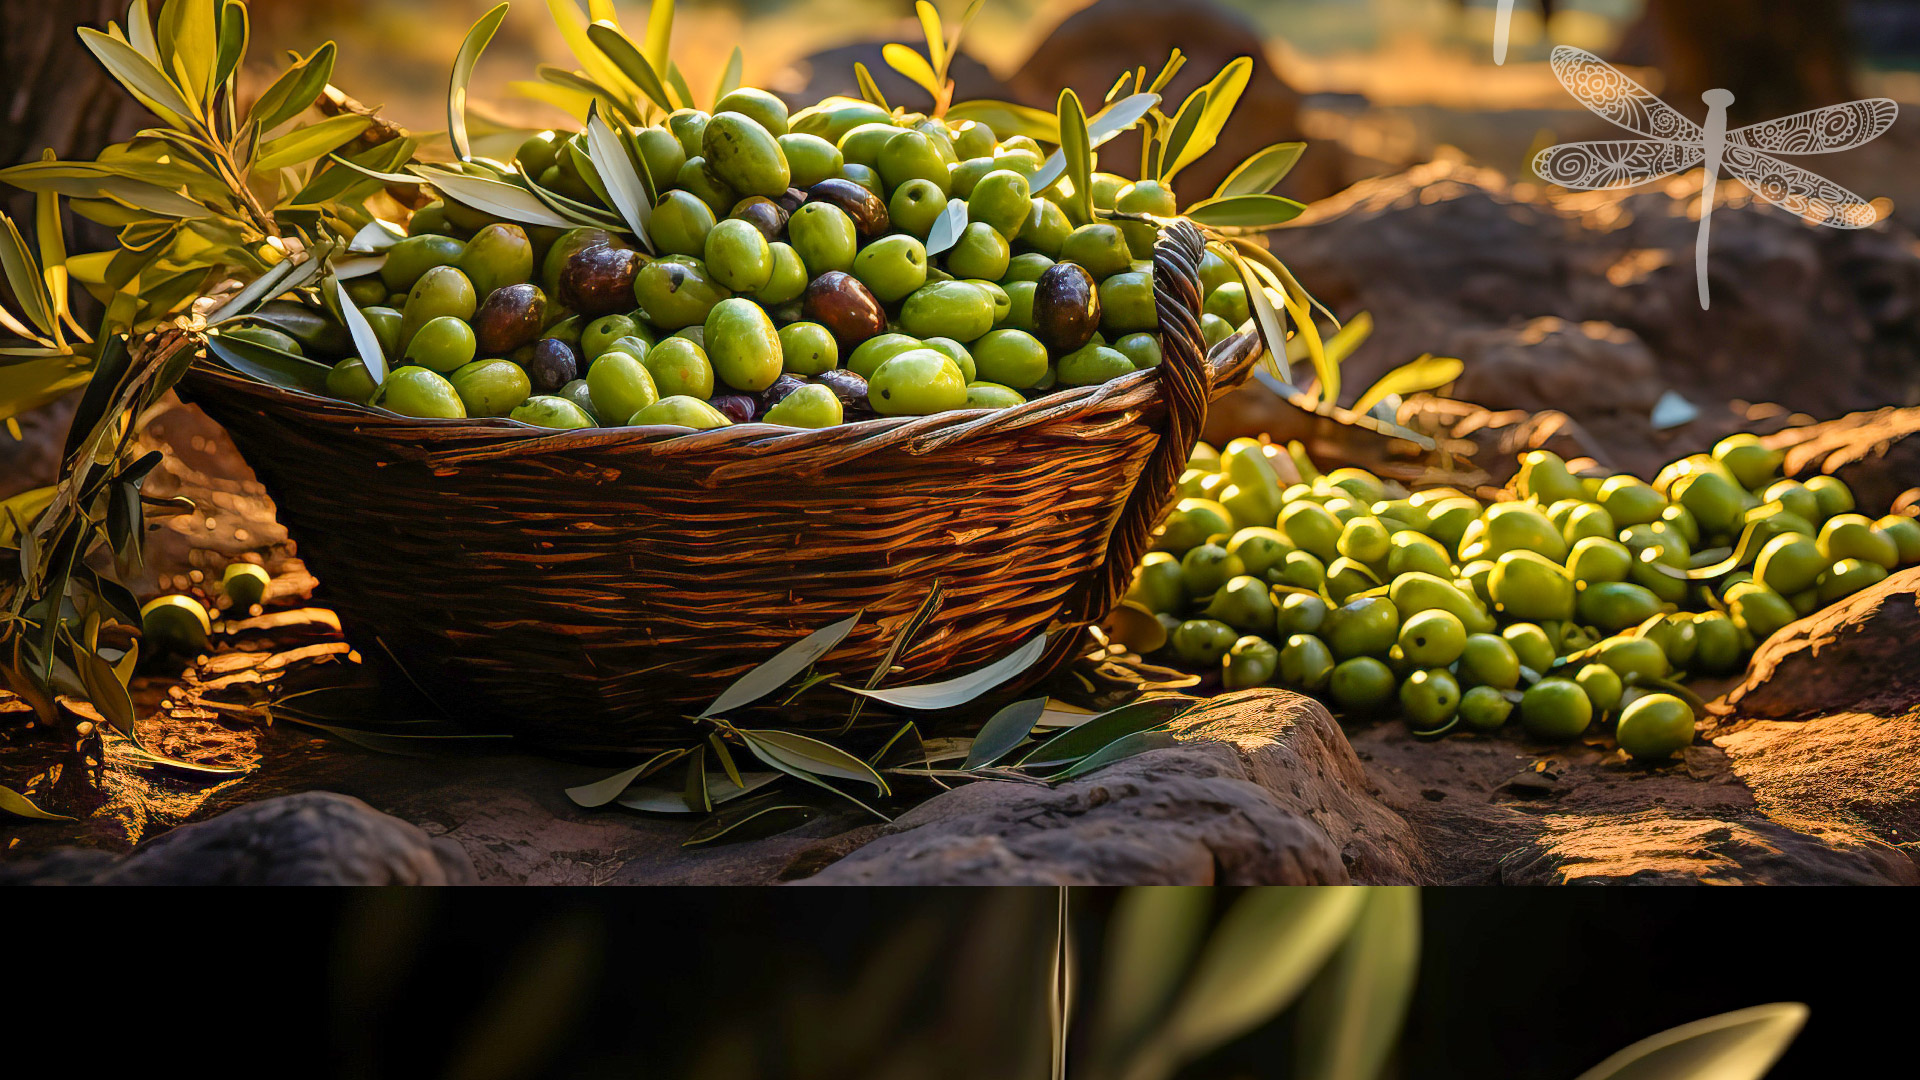 Diseño gráfico y creativo de etiquetas de aceite de oliva virgen extra AMPIO ACEITE